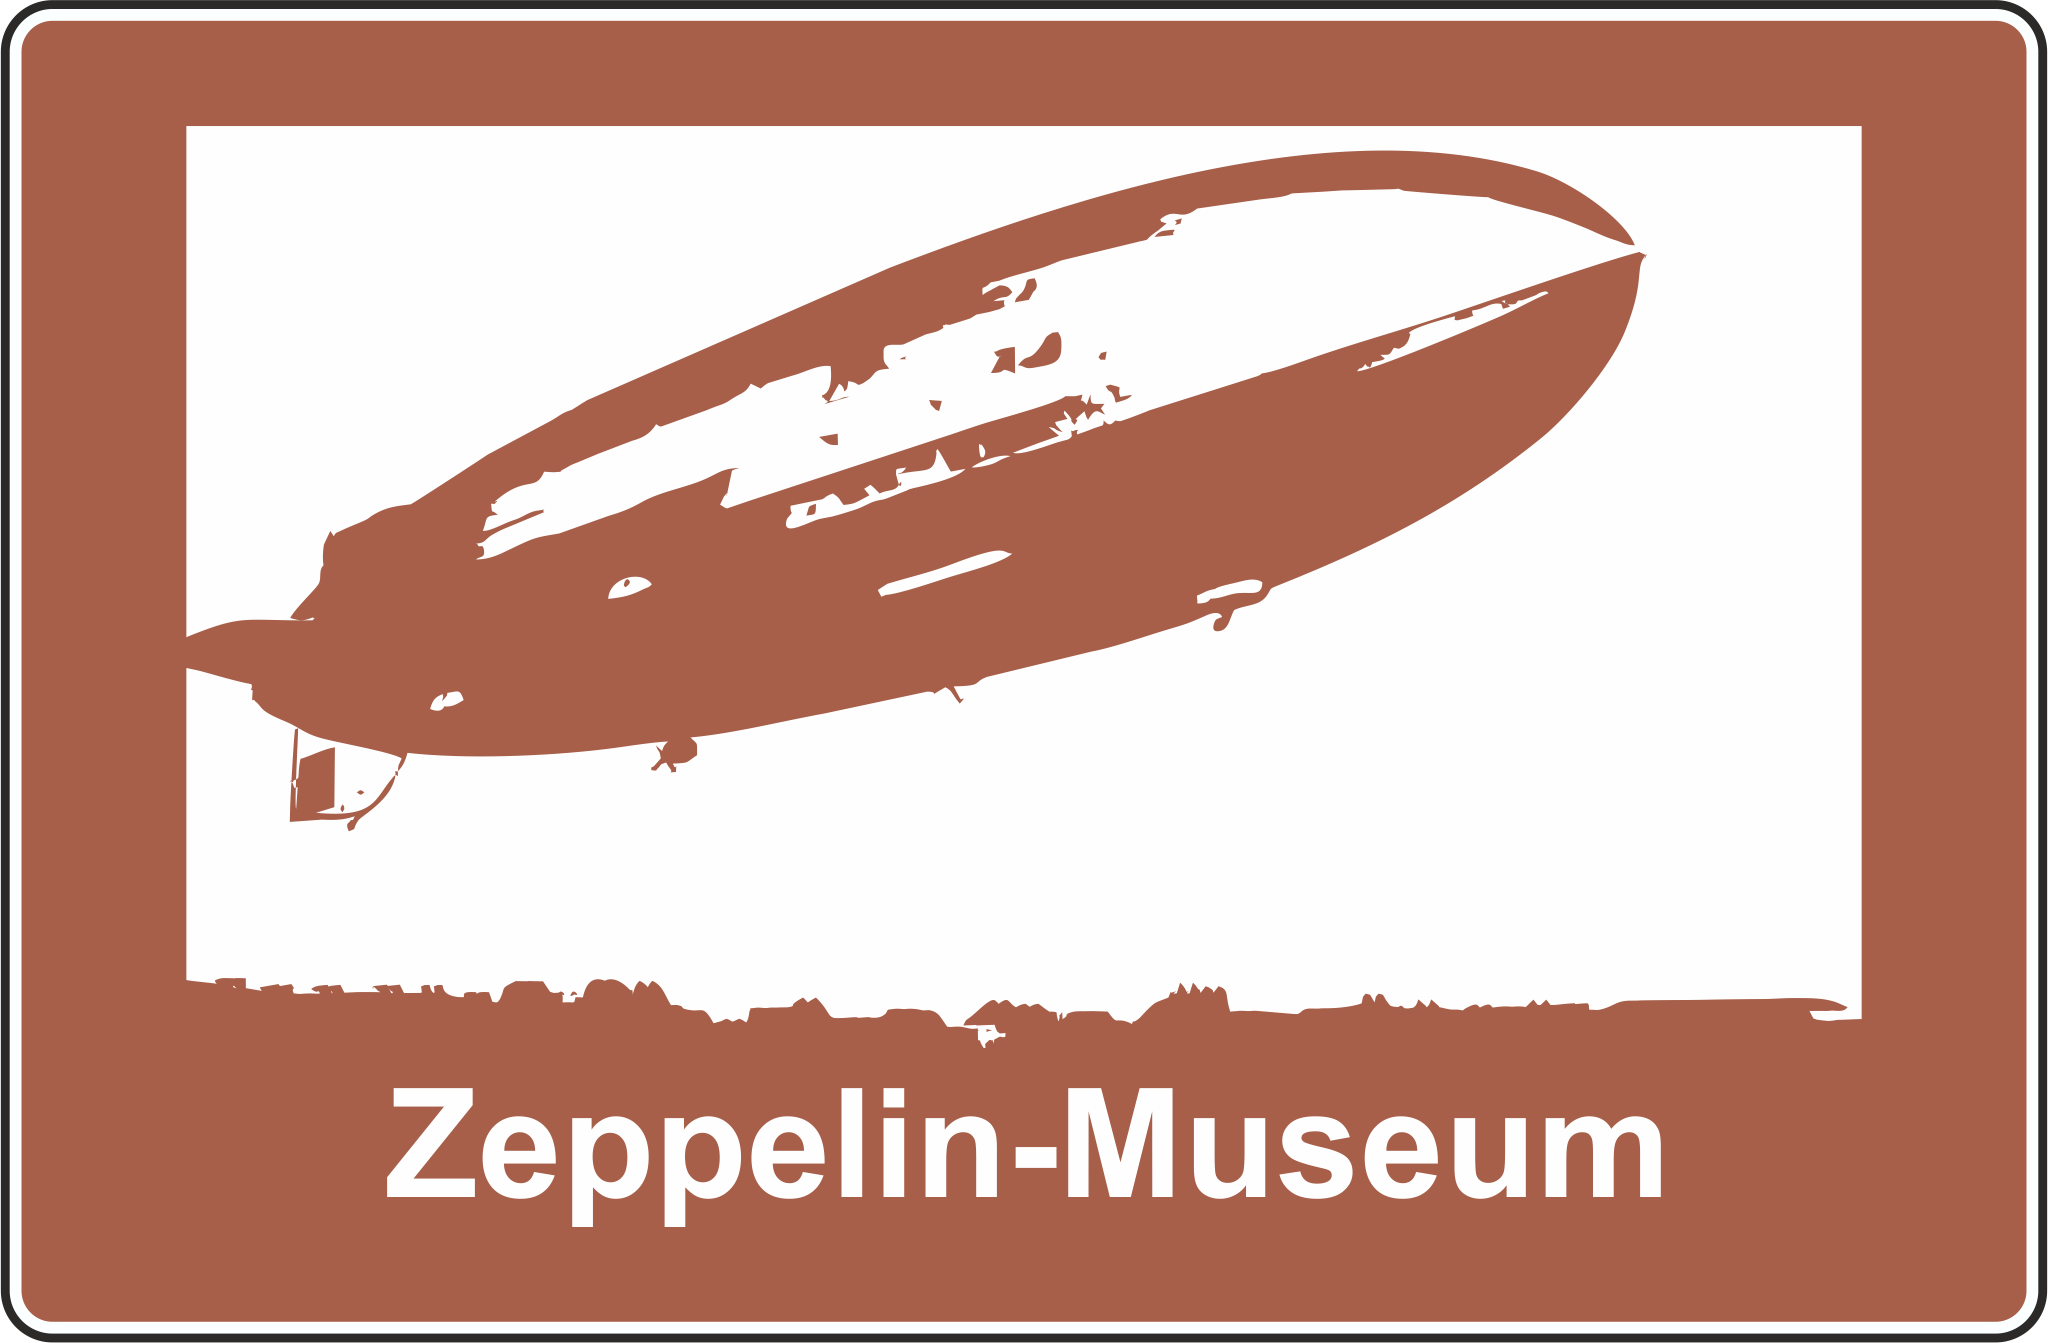 Autobahn-Hinweistafel Zeppelin-Museum © <a href="http://www.alexander-jungmann.de/" target="_blank">www.alexander-jungmann.de</a> 2016